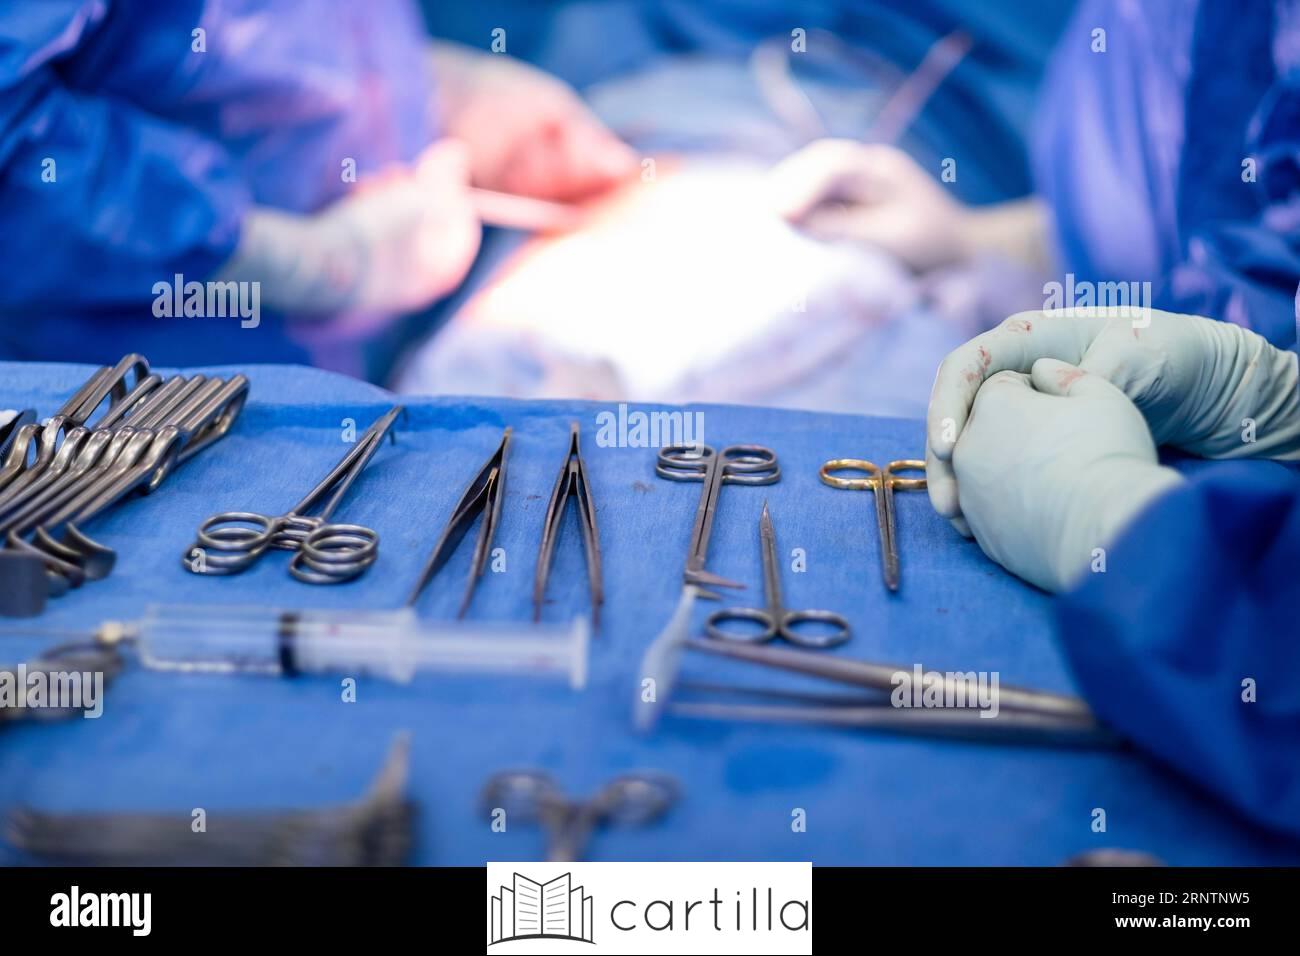 Procedimientos y cirugías cubiertos